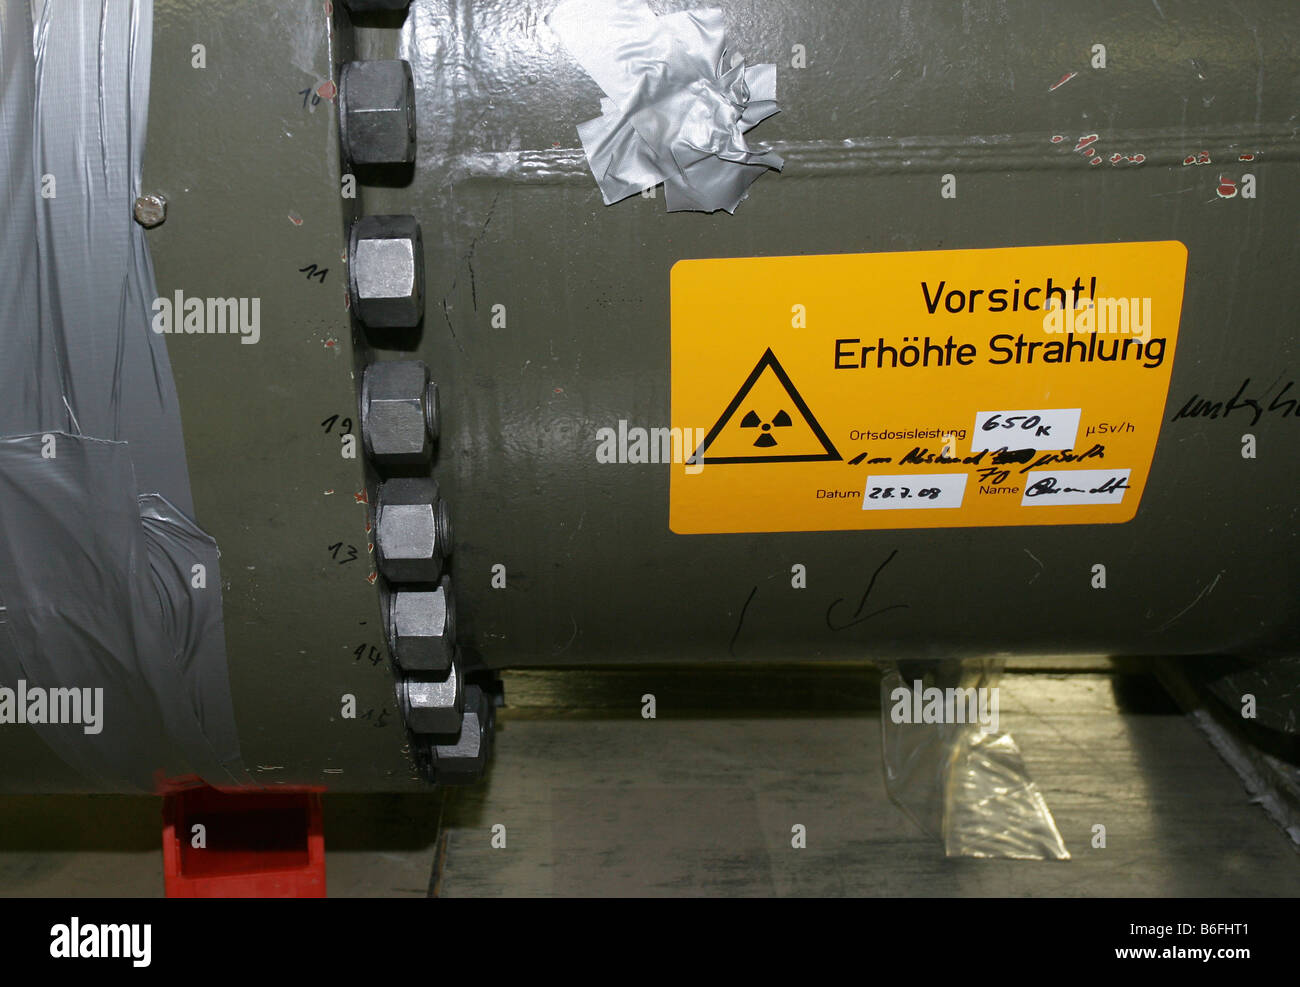 Las obras de desmantelamiento del reactor de energía atómica Muelheim-Kaerlich, signo de un intercambiador de calor desmantelado advertencia contra incre Foto de stock